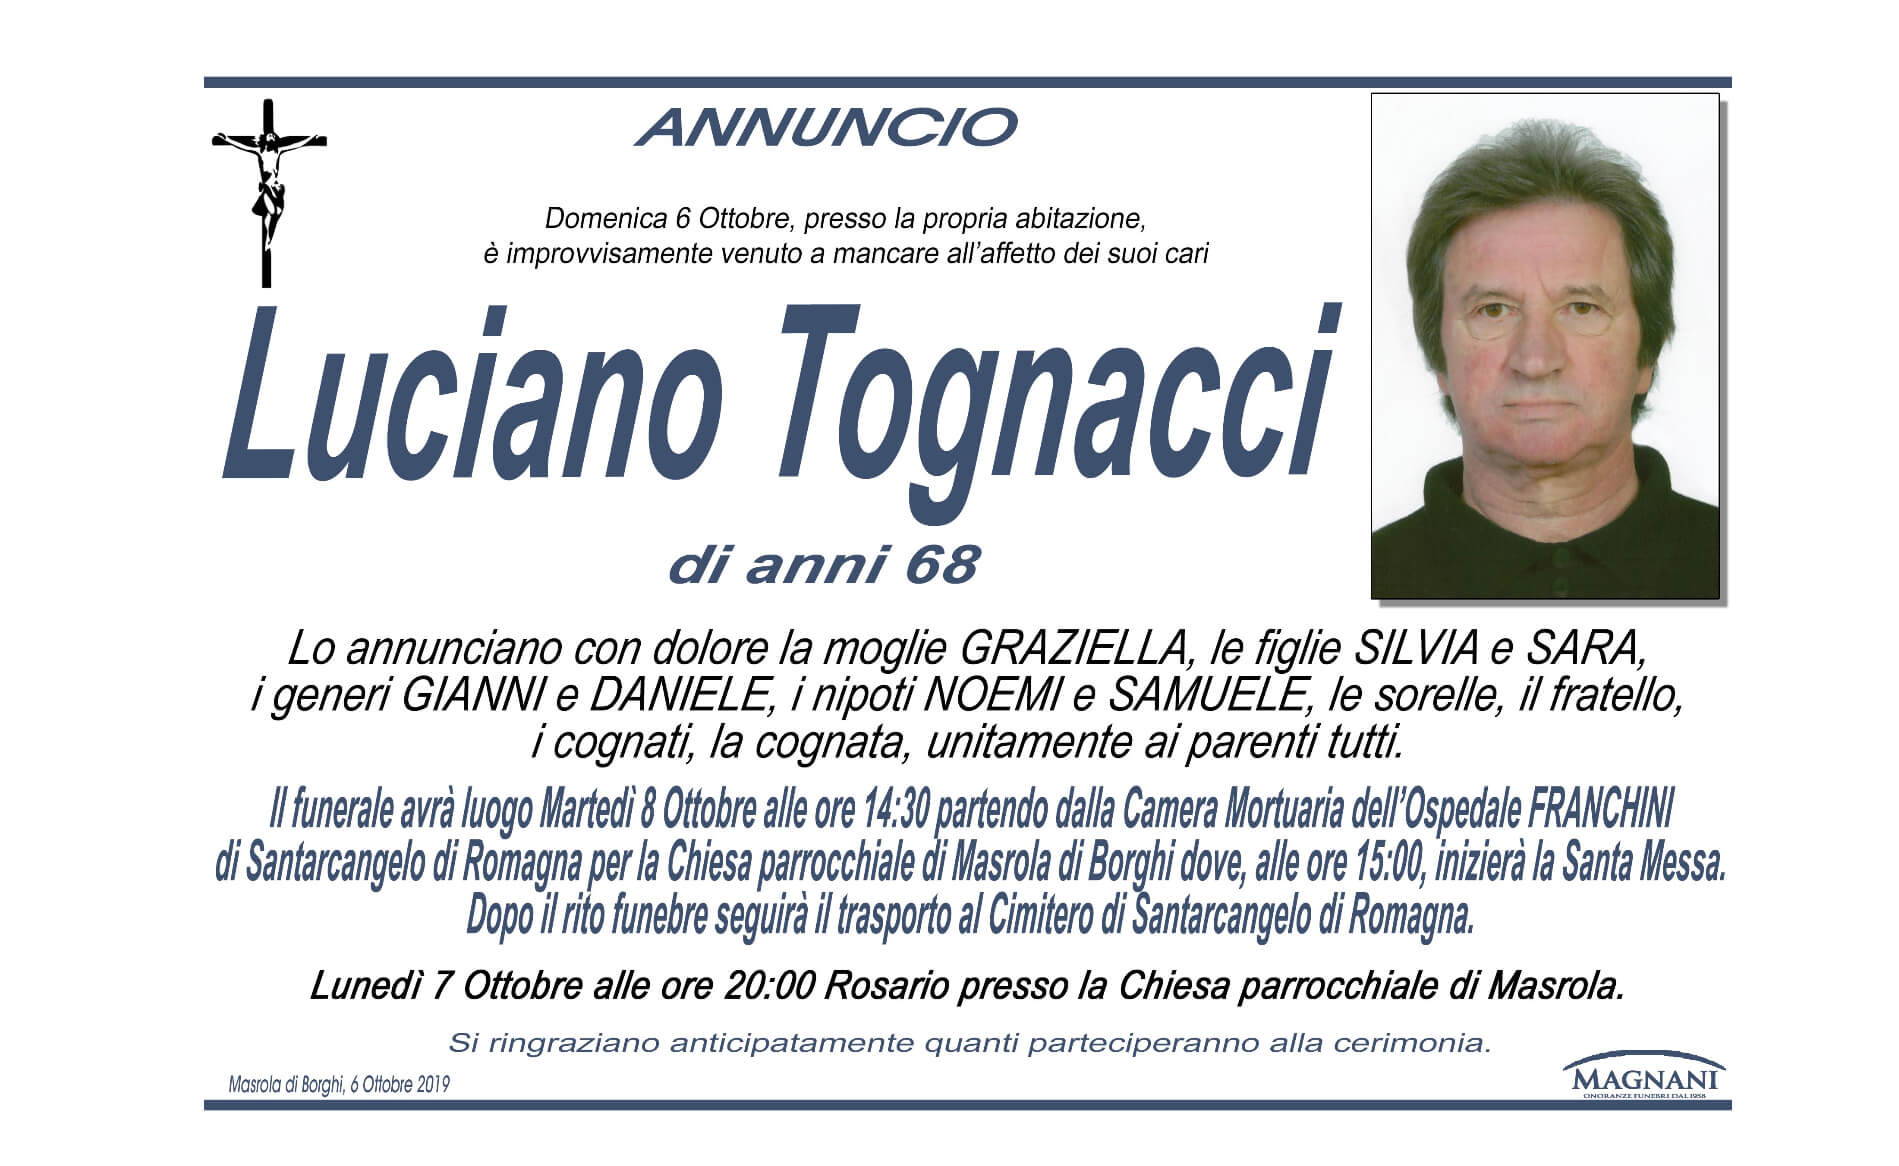 Luciano Tognacci